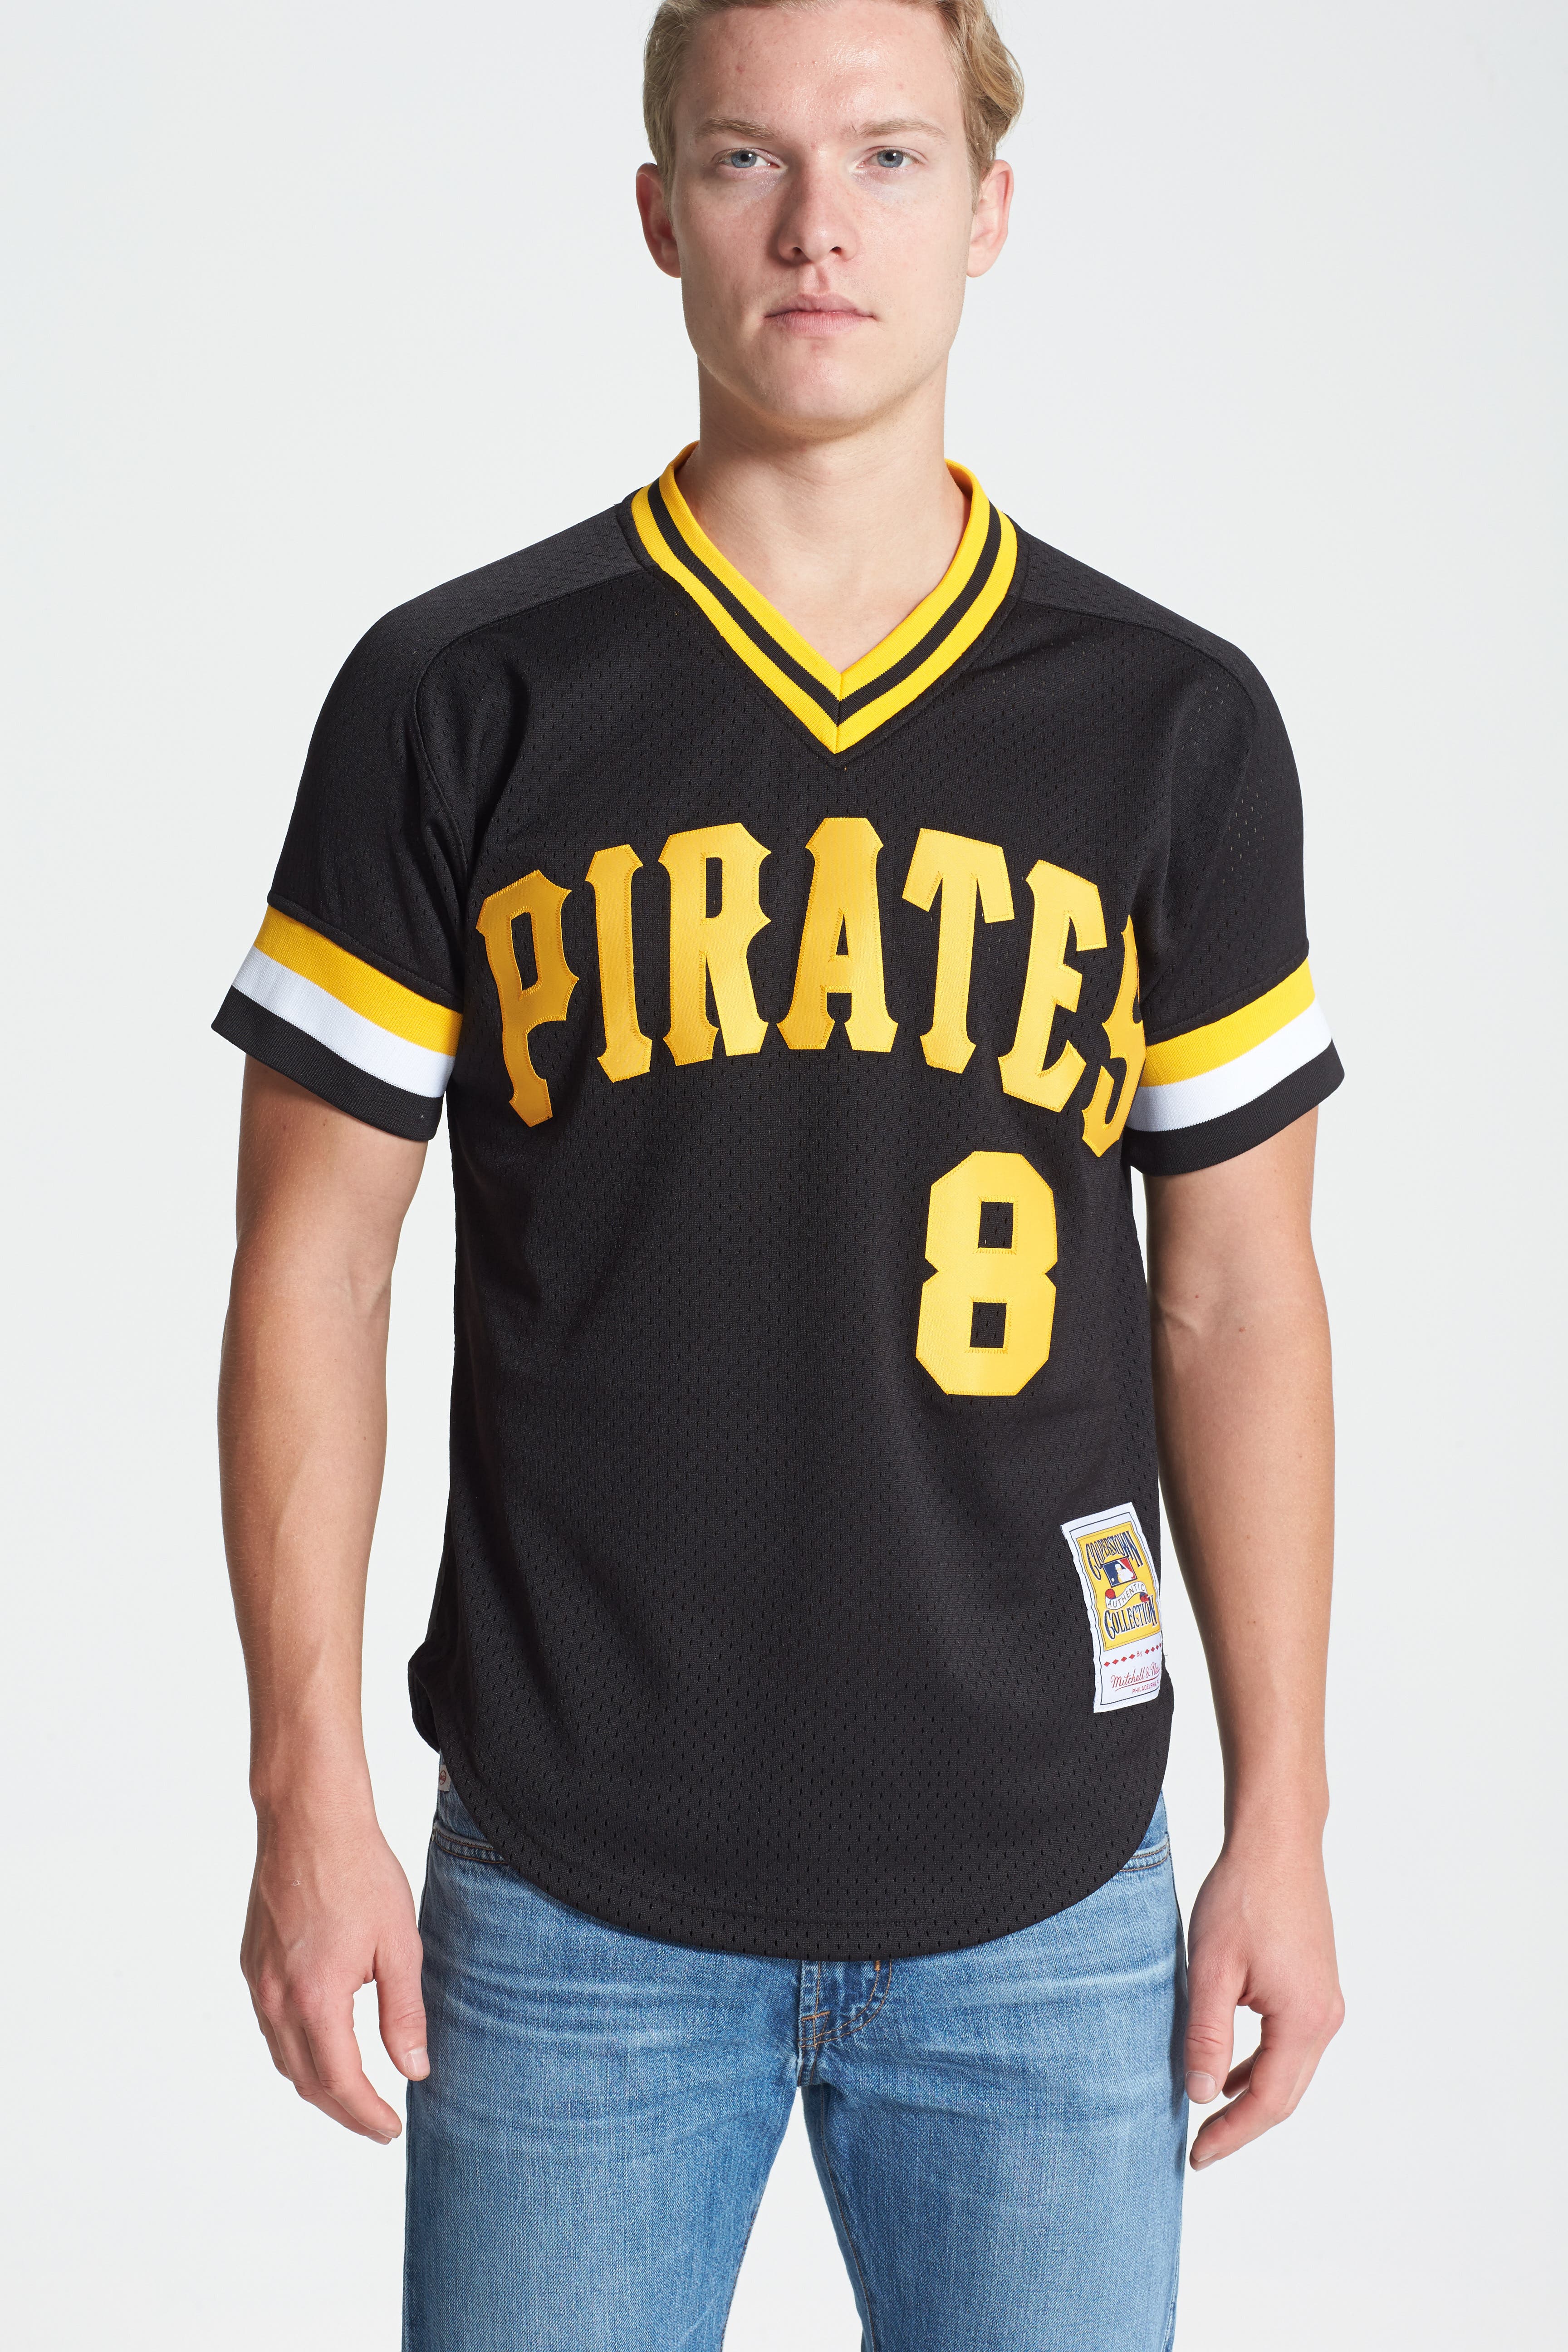 mitchell and ness pirates jersey